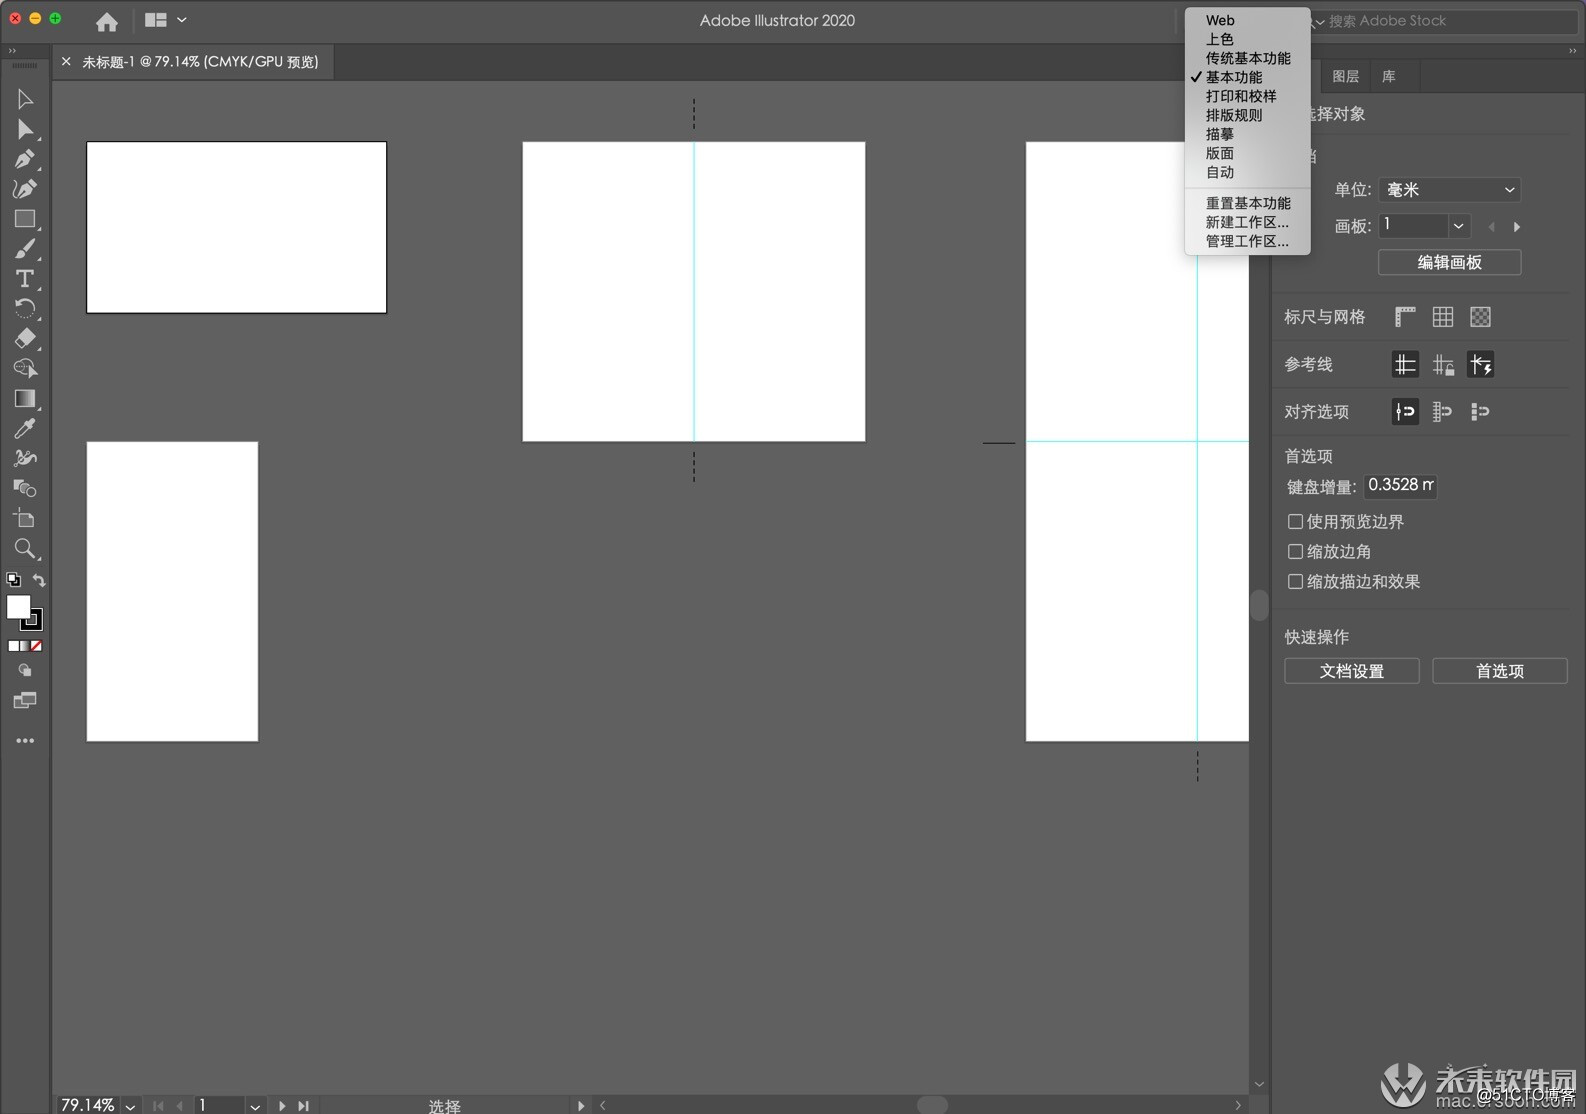 一款非常好的矢量图形处理工具--Adobe Illustrator 2020 for Mac